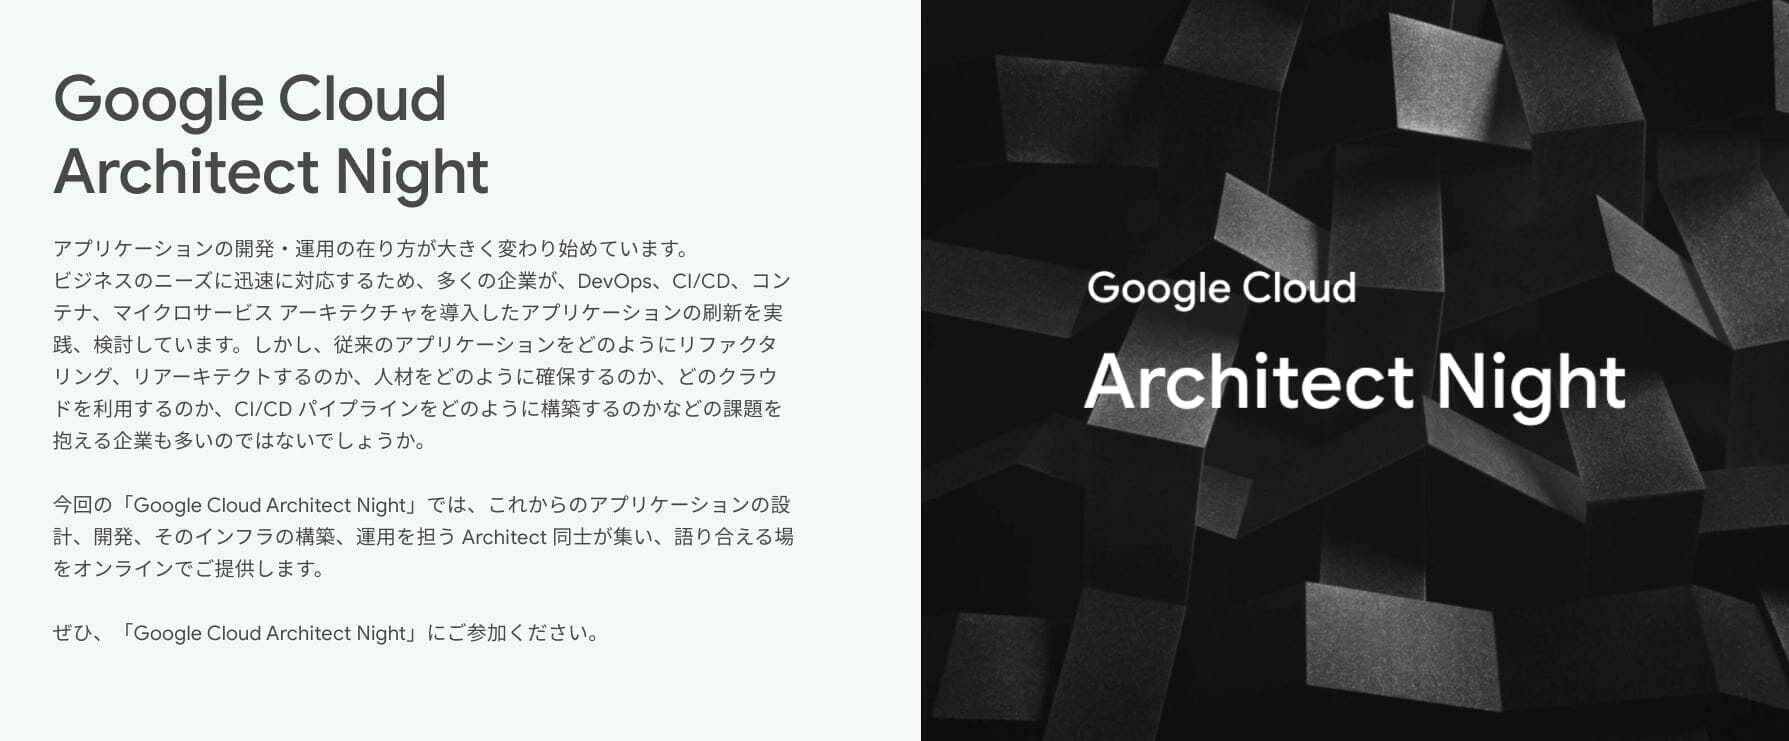 [GCP] Google Cloud Architect Night